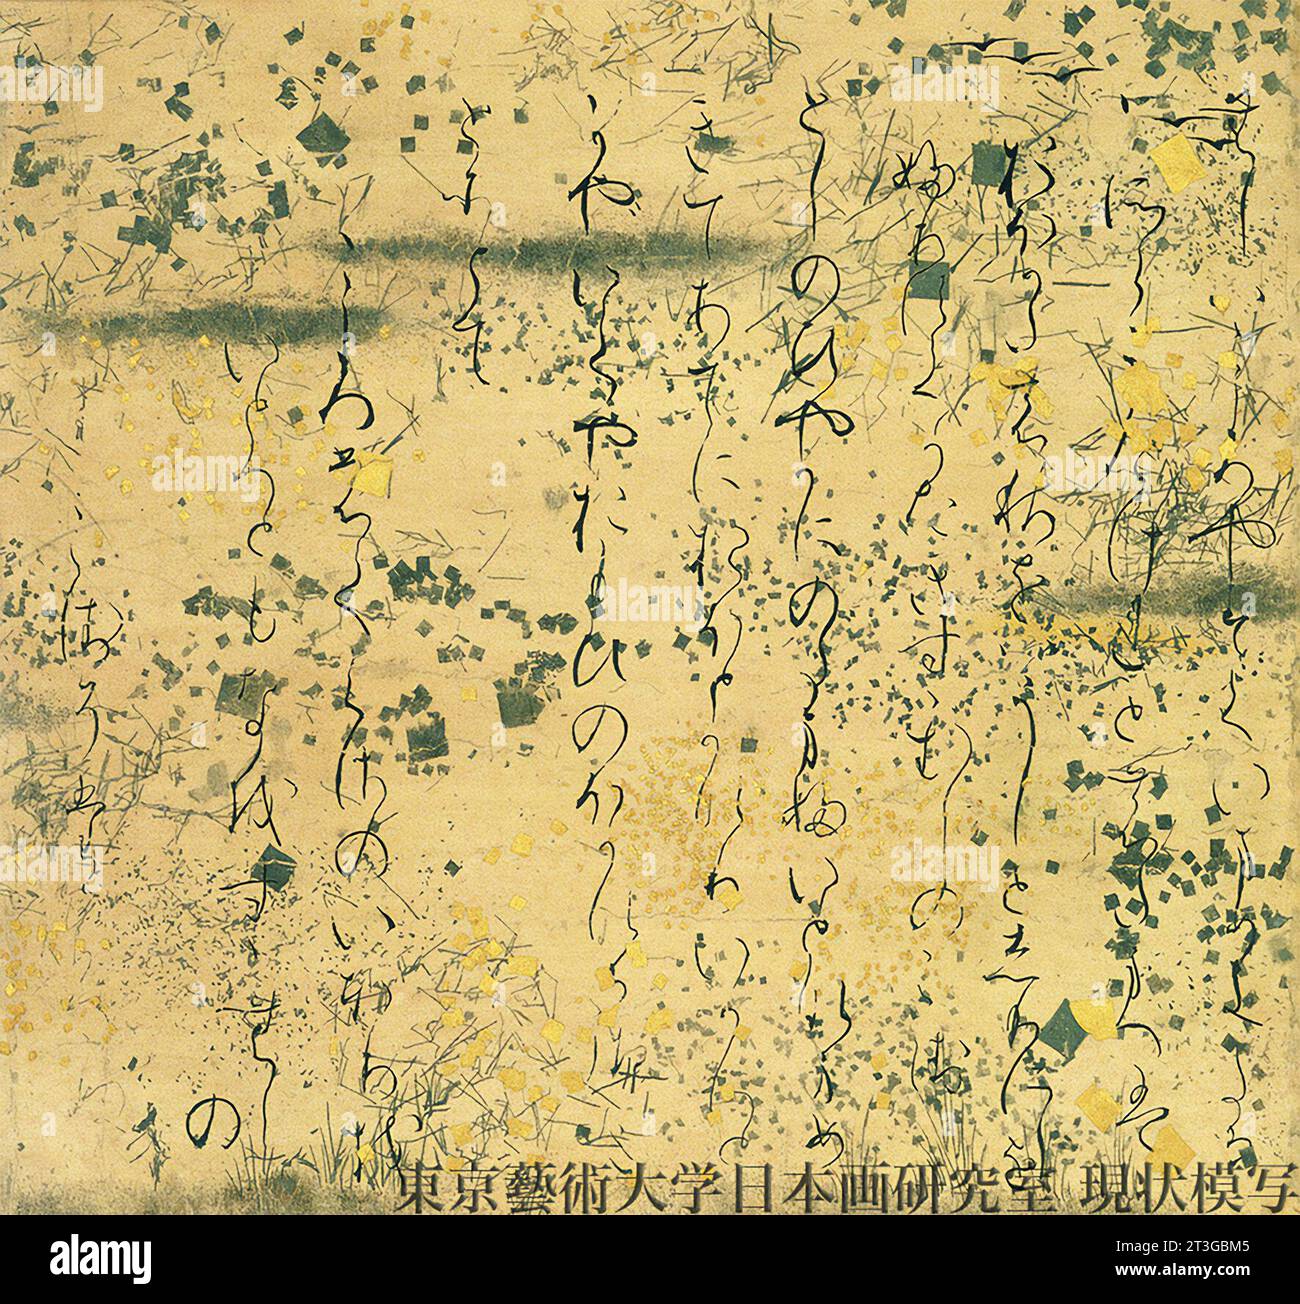 Conte de Genji. Fragment d'un emaki du 12e siècle Genji Monogatari. Texte écrit à partir du premier défilement manuel illustré Banque D'Images